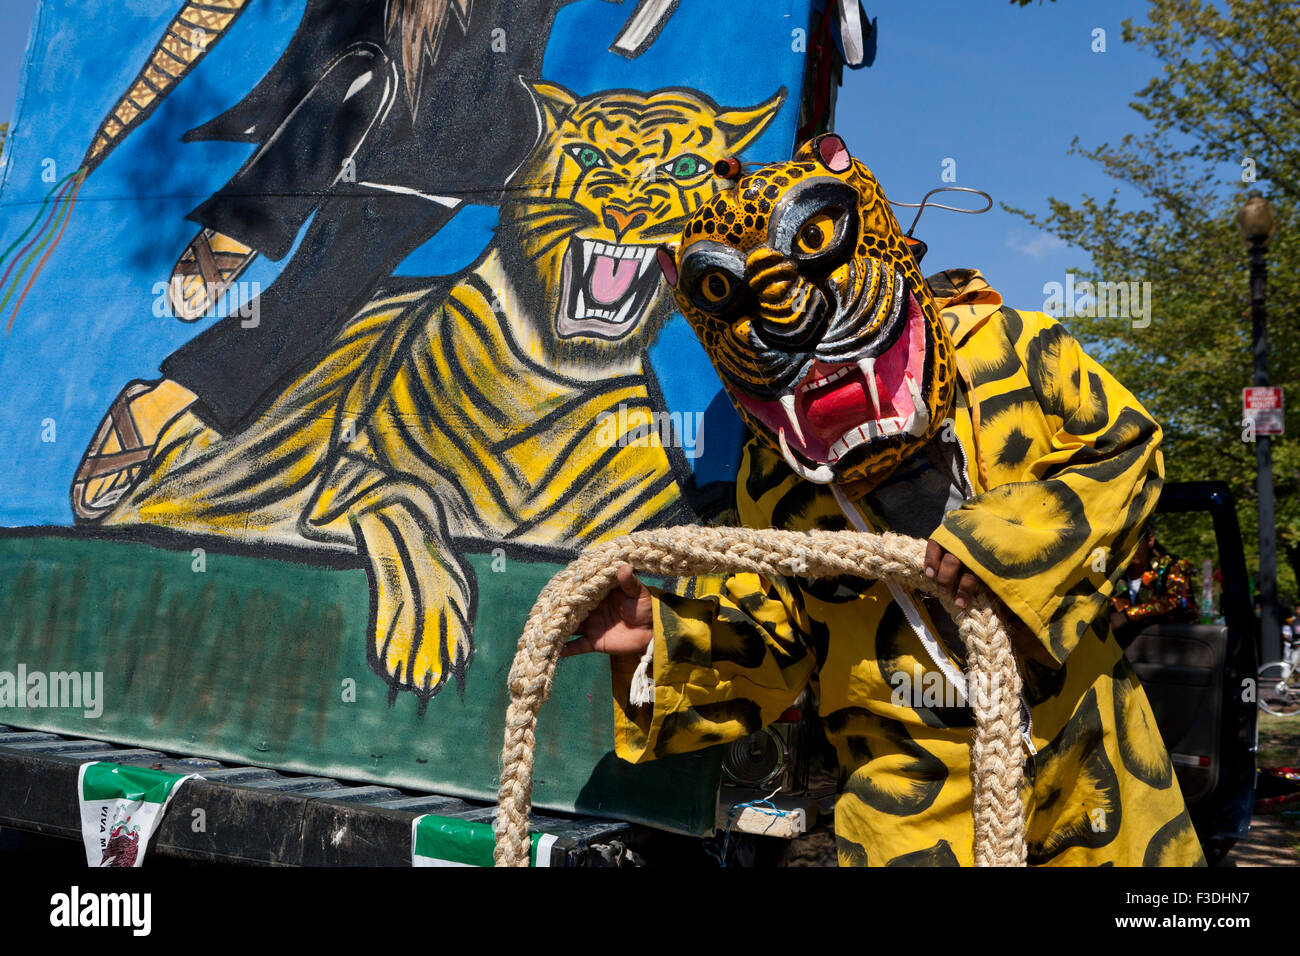 Danza de los Tecuanes (Messicano tradizionale danza folk) interprete in costume di tiger durante il 2015 Nazionale Festival Latino - Washington DC, Stati Uniti d'America Foto Stock